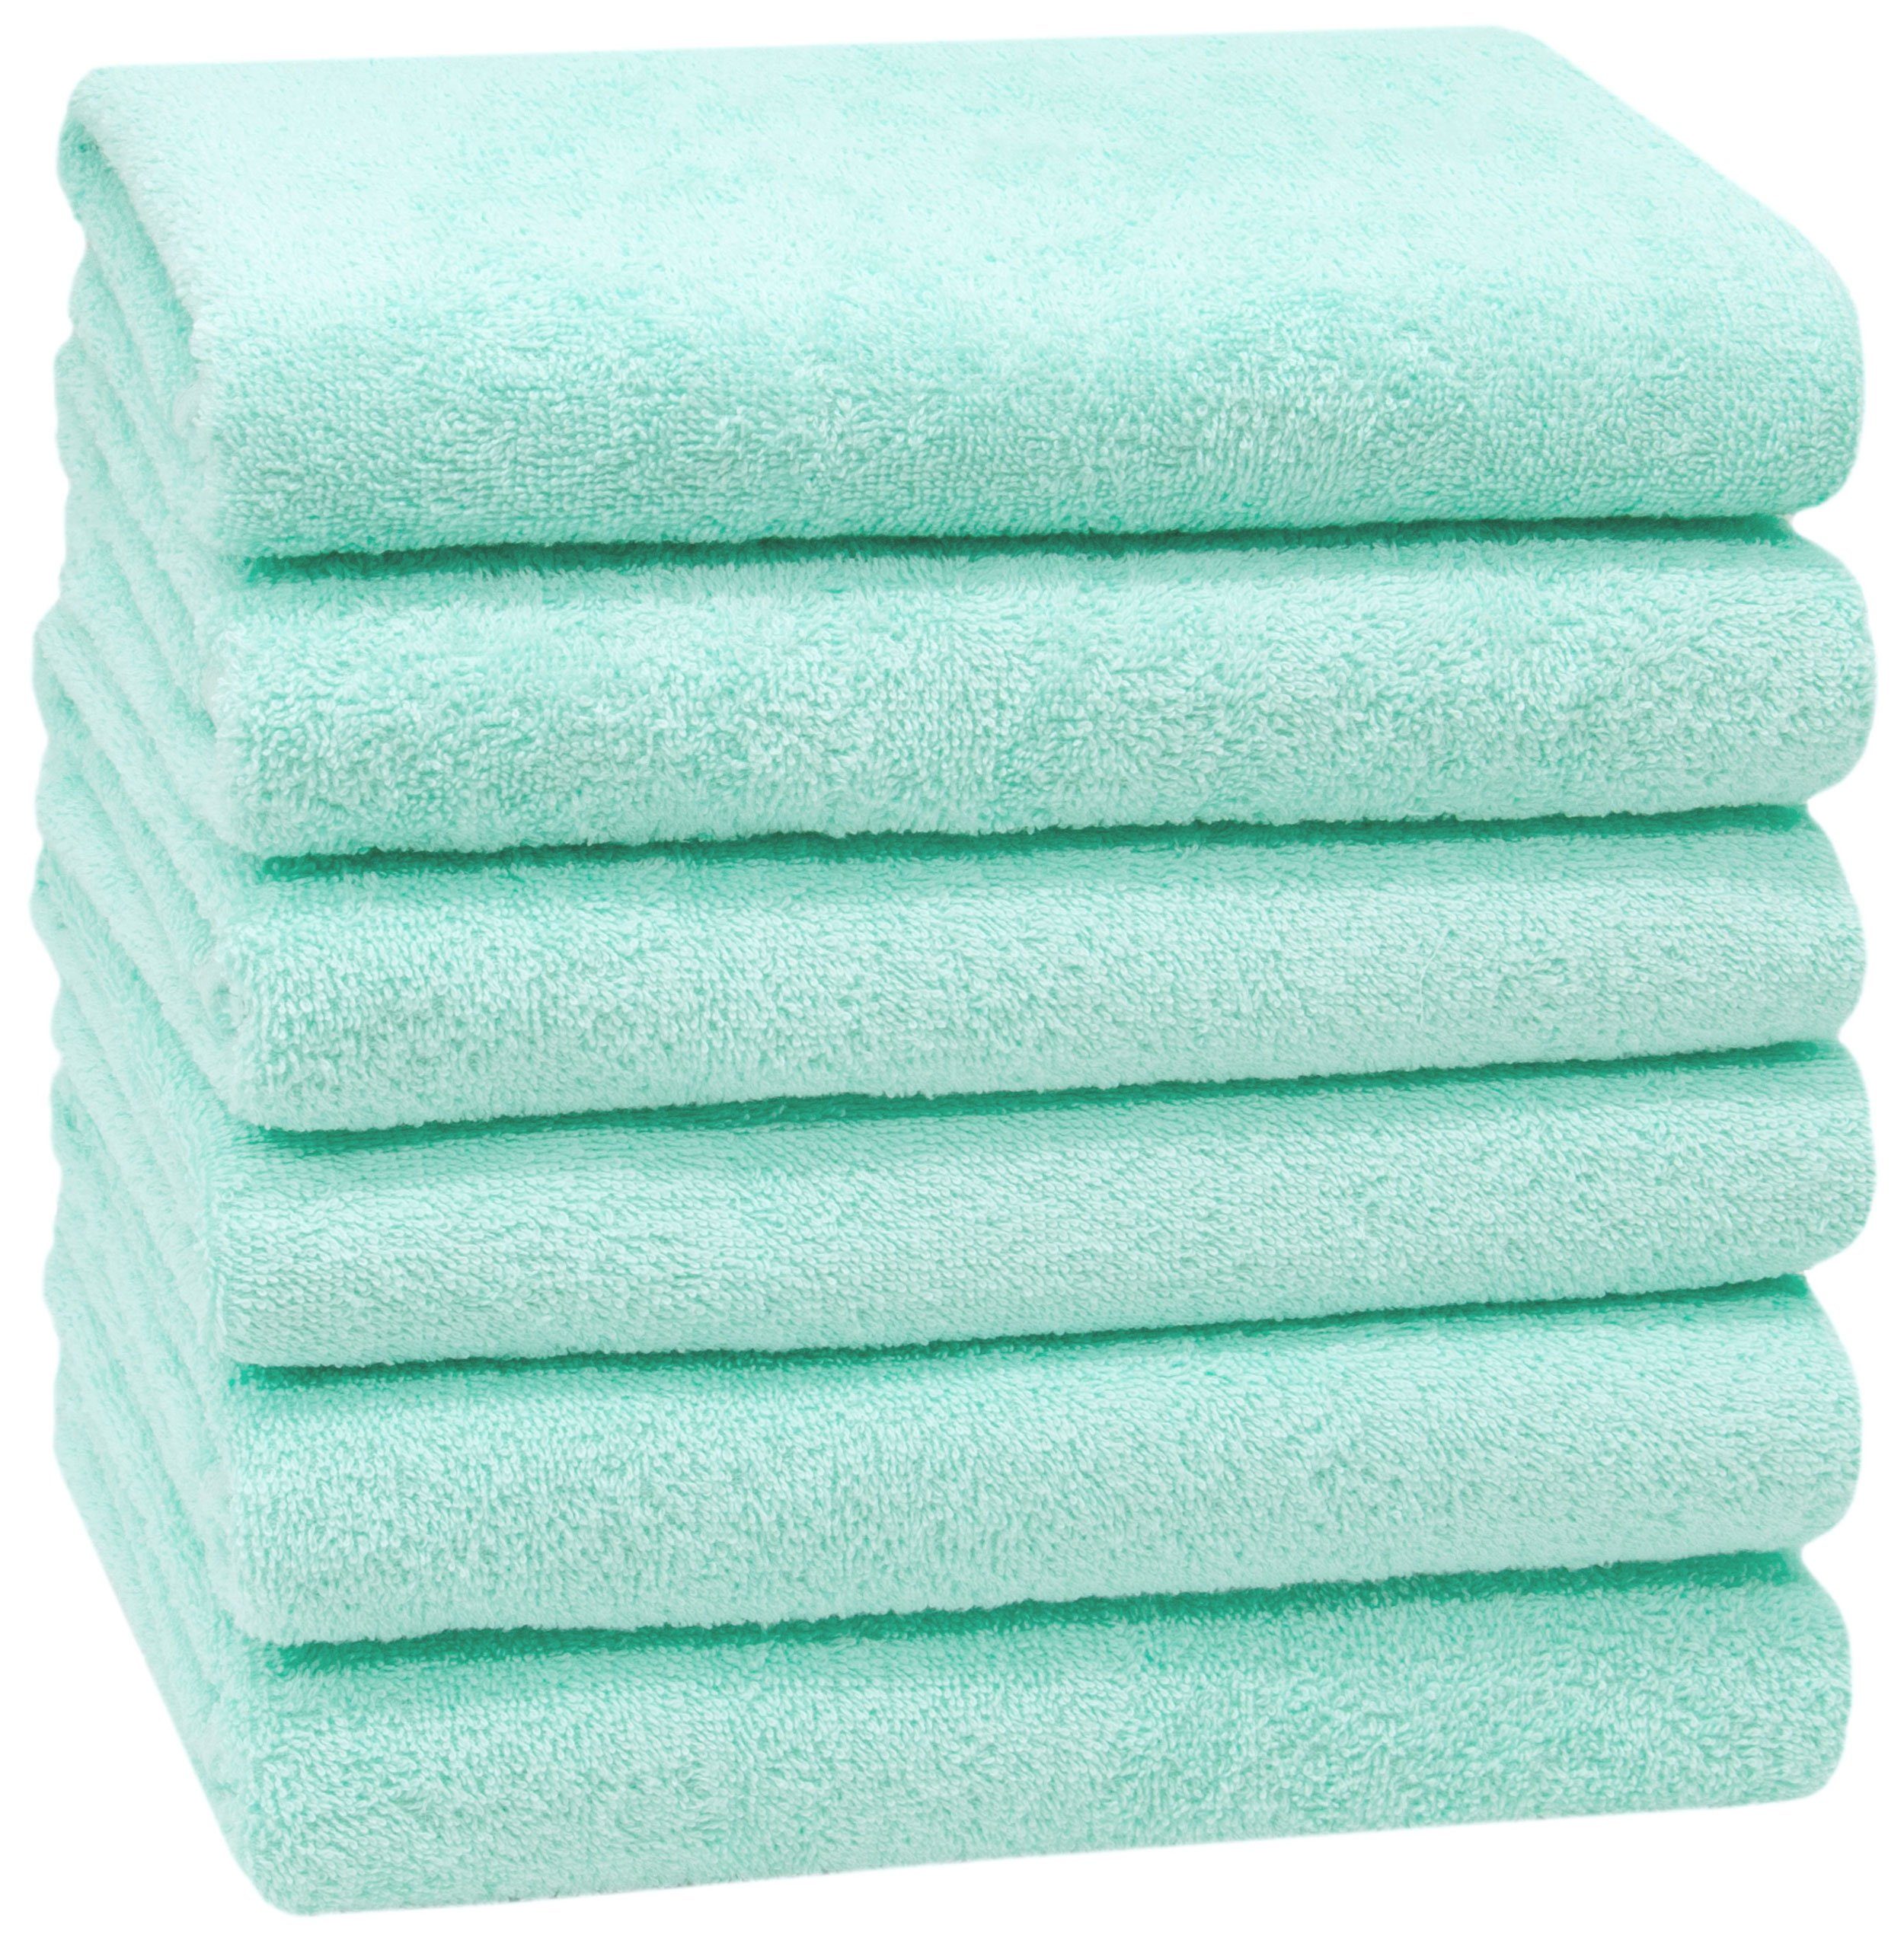 Edle Handtücher online kaufen | OTTO